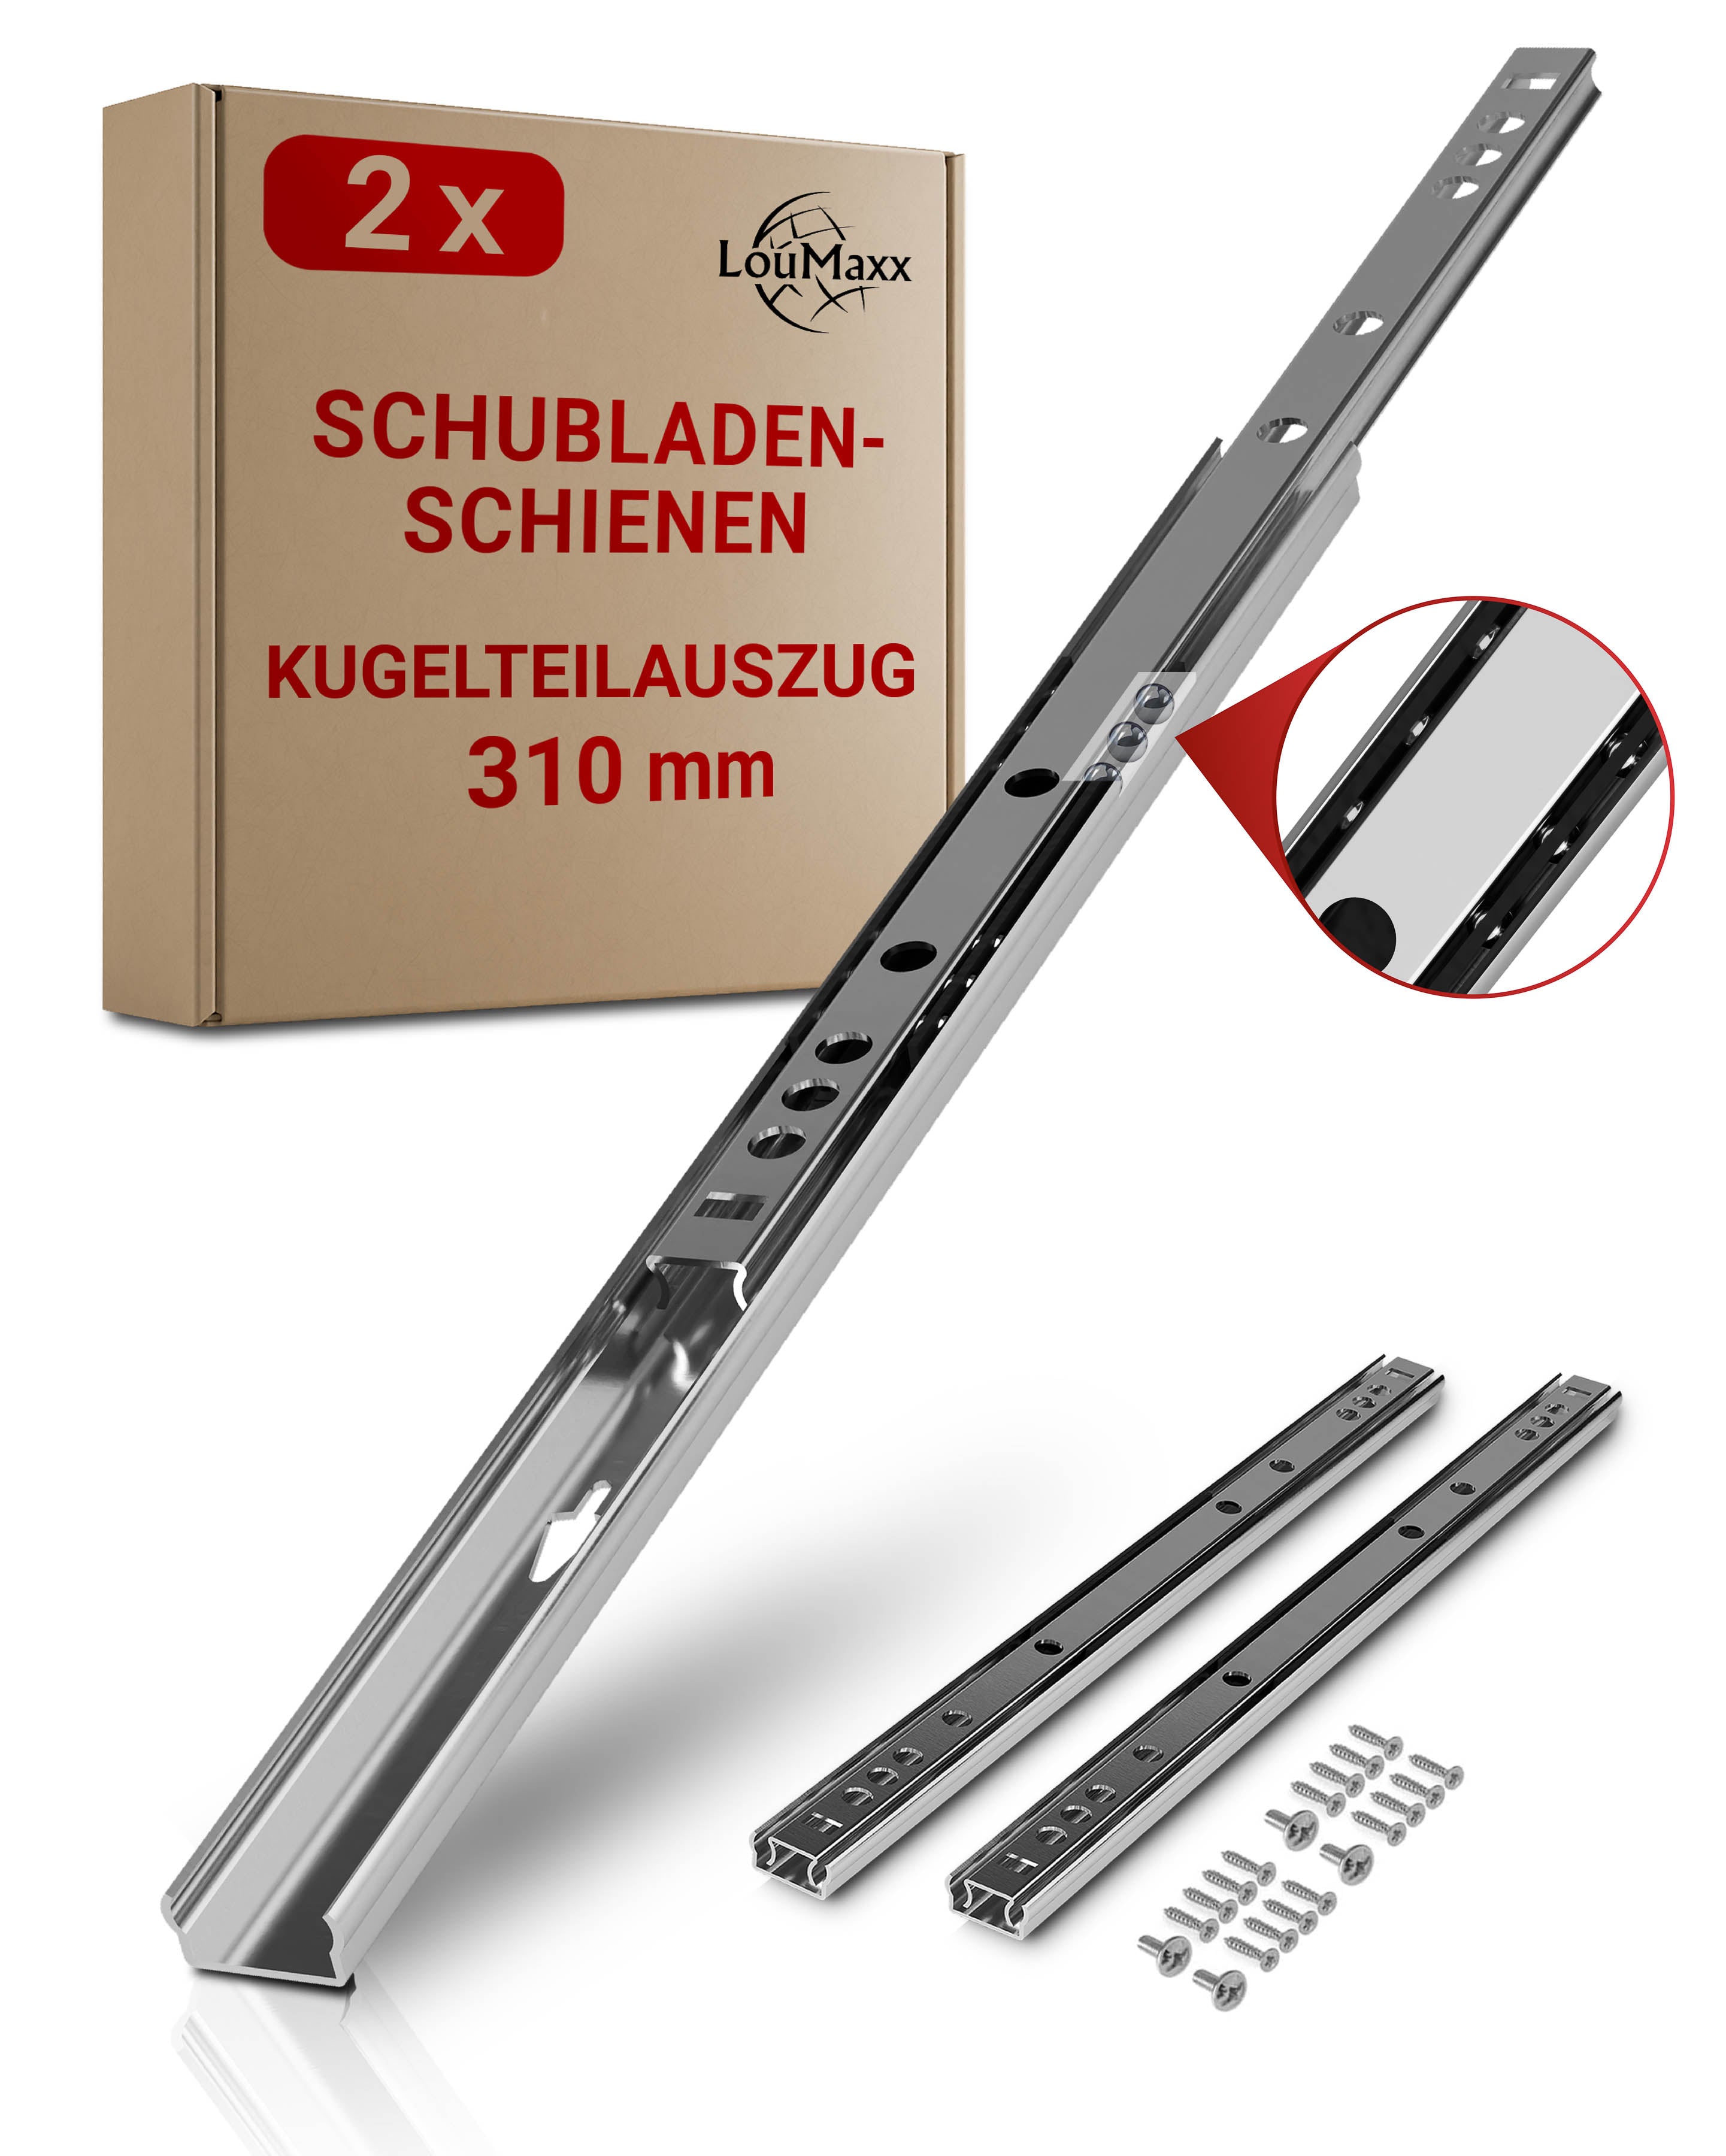 LouMaxx Kugelauszug 2er Set (1 Paar) Schubladenschienen 310 mm 17 mm Nut Schubladenauszug - Schienen für Schubladen - Schubladen Schienensystem